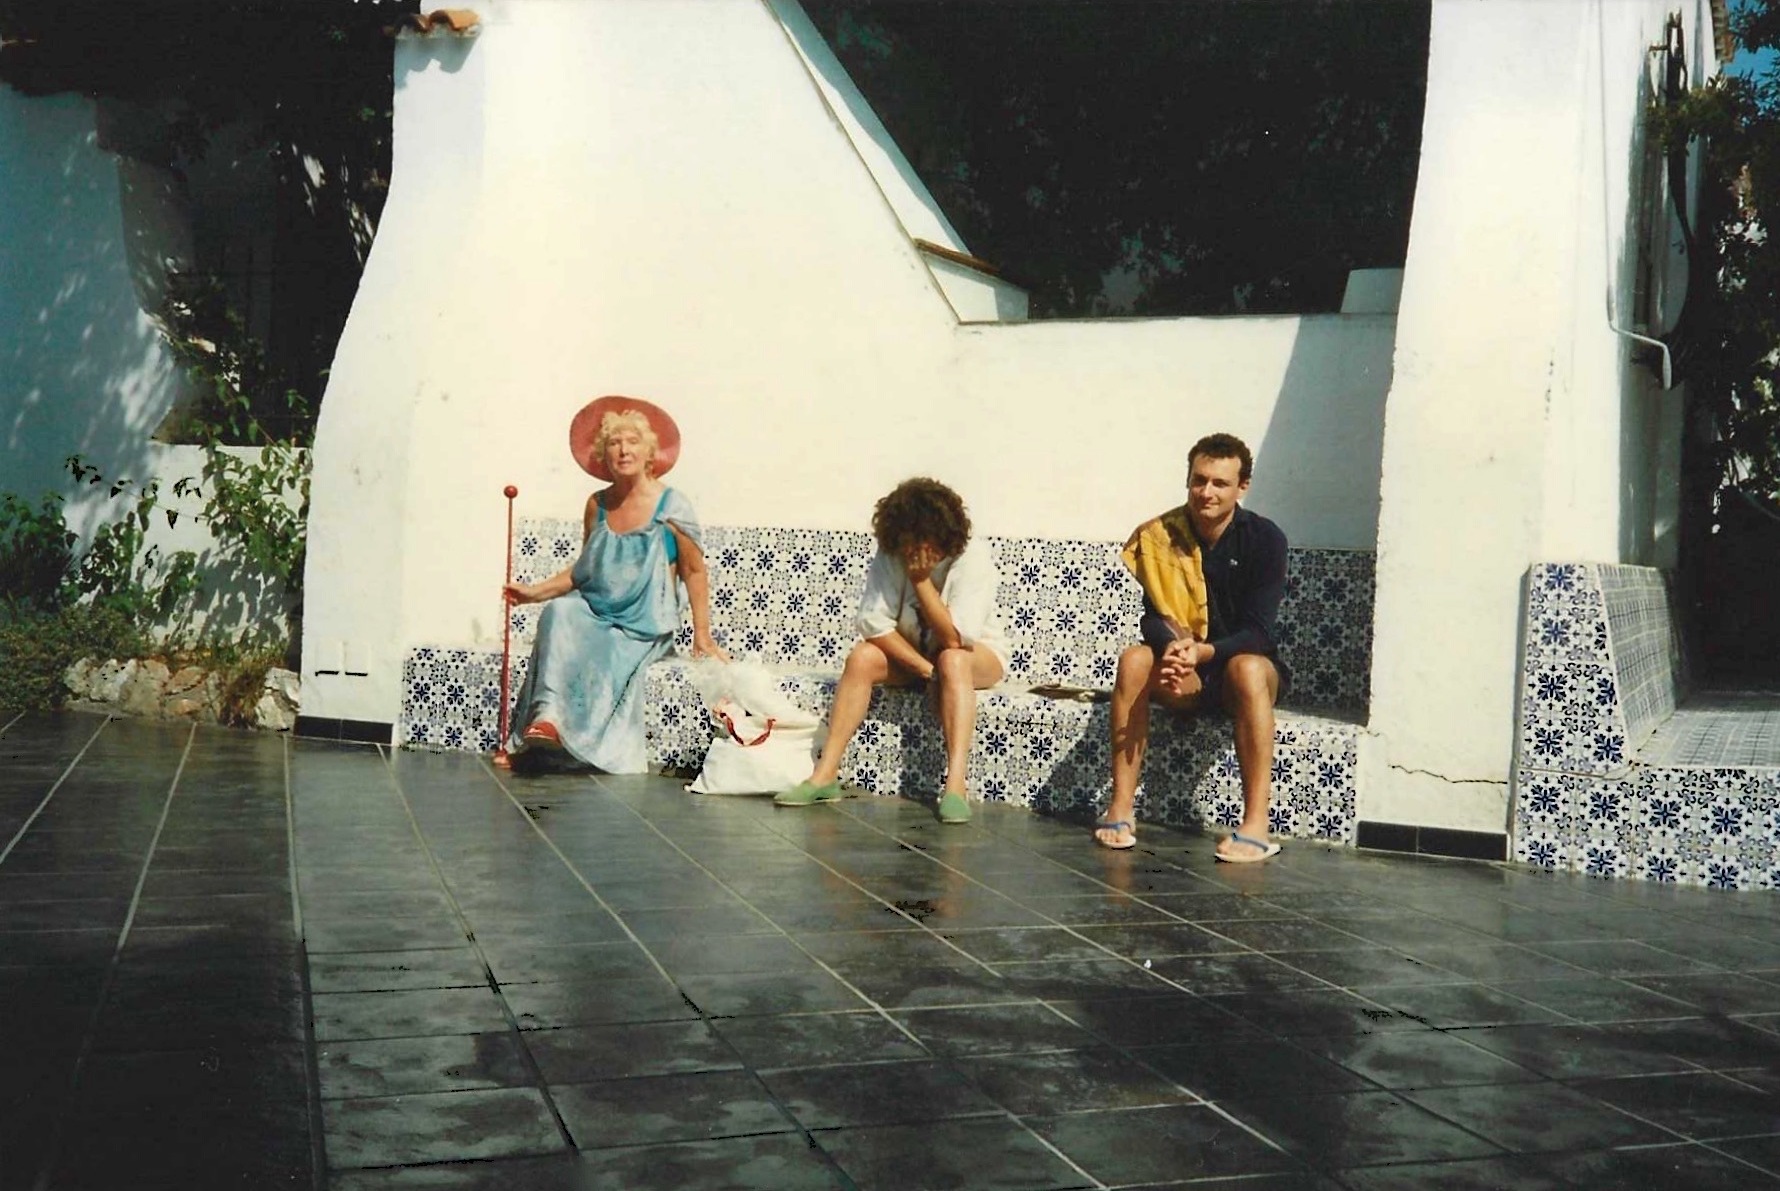 Una fotografia di Elsa de’ Giorgi, Maria Grazia Rombaldi e Roberto Deidier (giugno 1989, San Felice Circeo). Per gentile concessione di Roberto Deidier